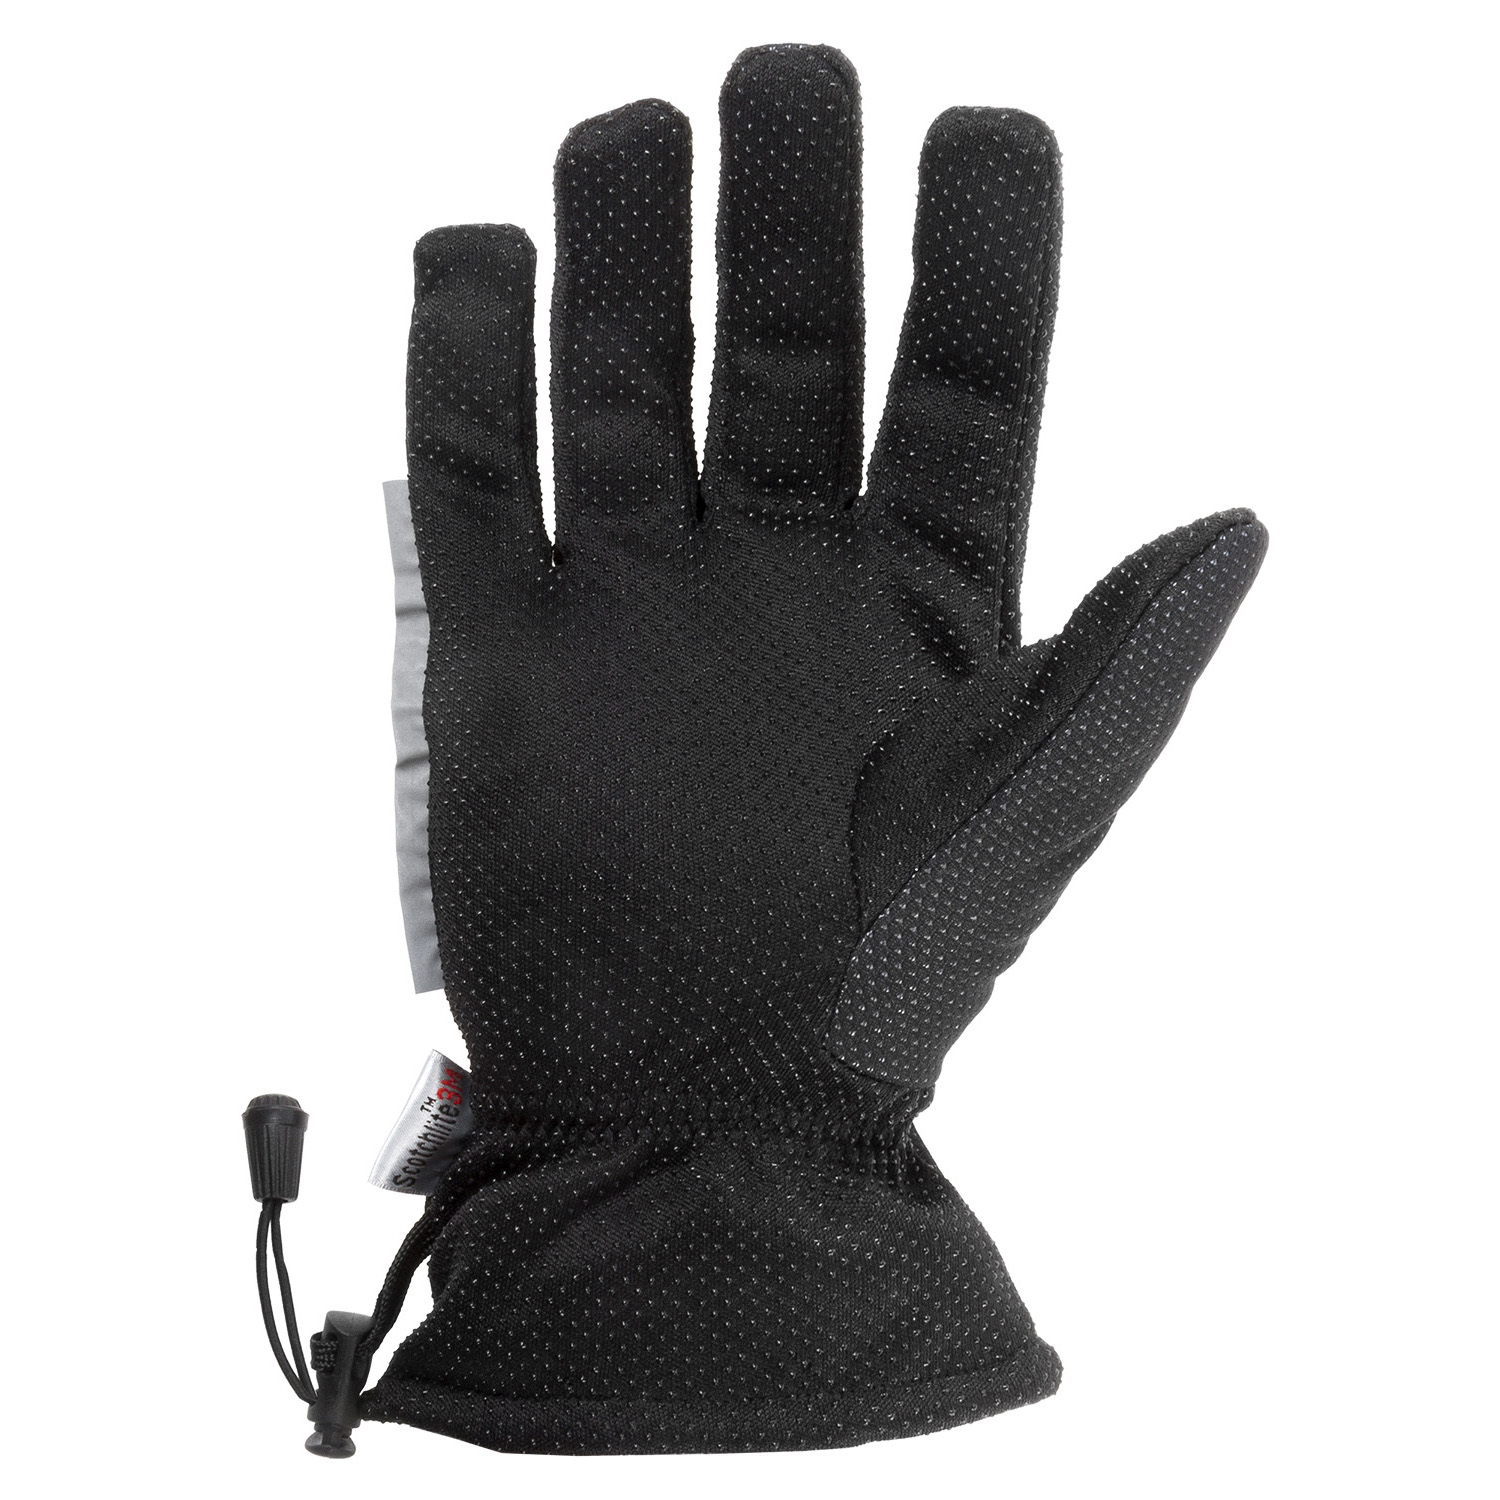 Winter Handschuh Gr. S/M in Schwarz/Anthrazit